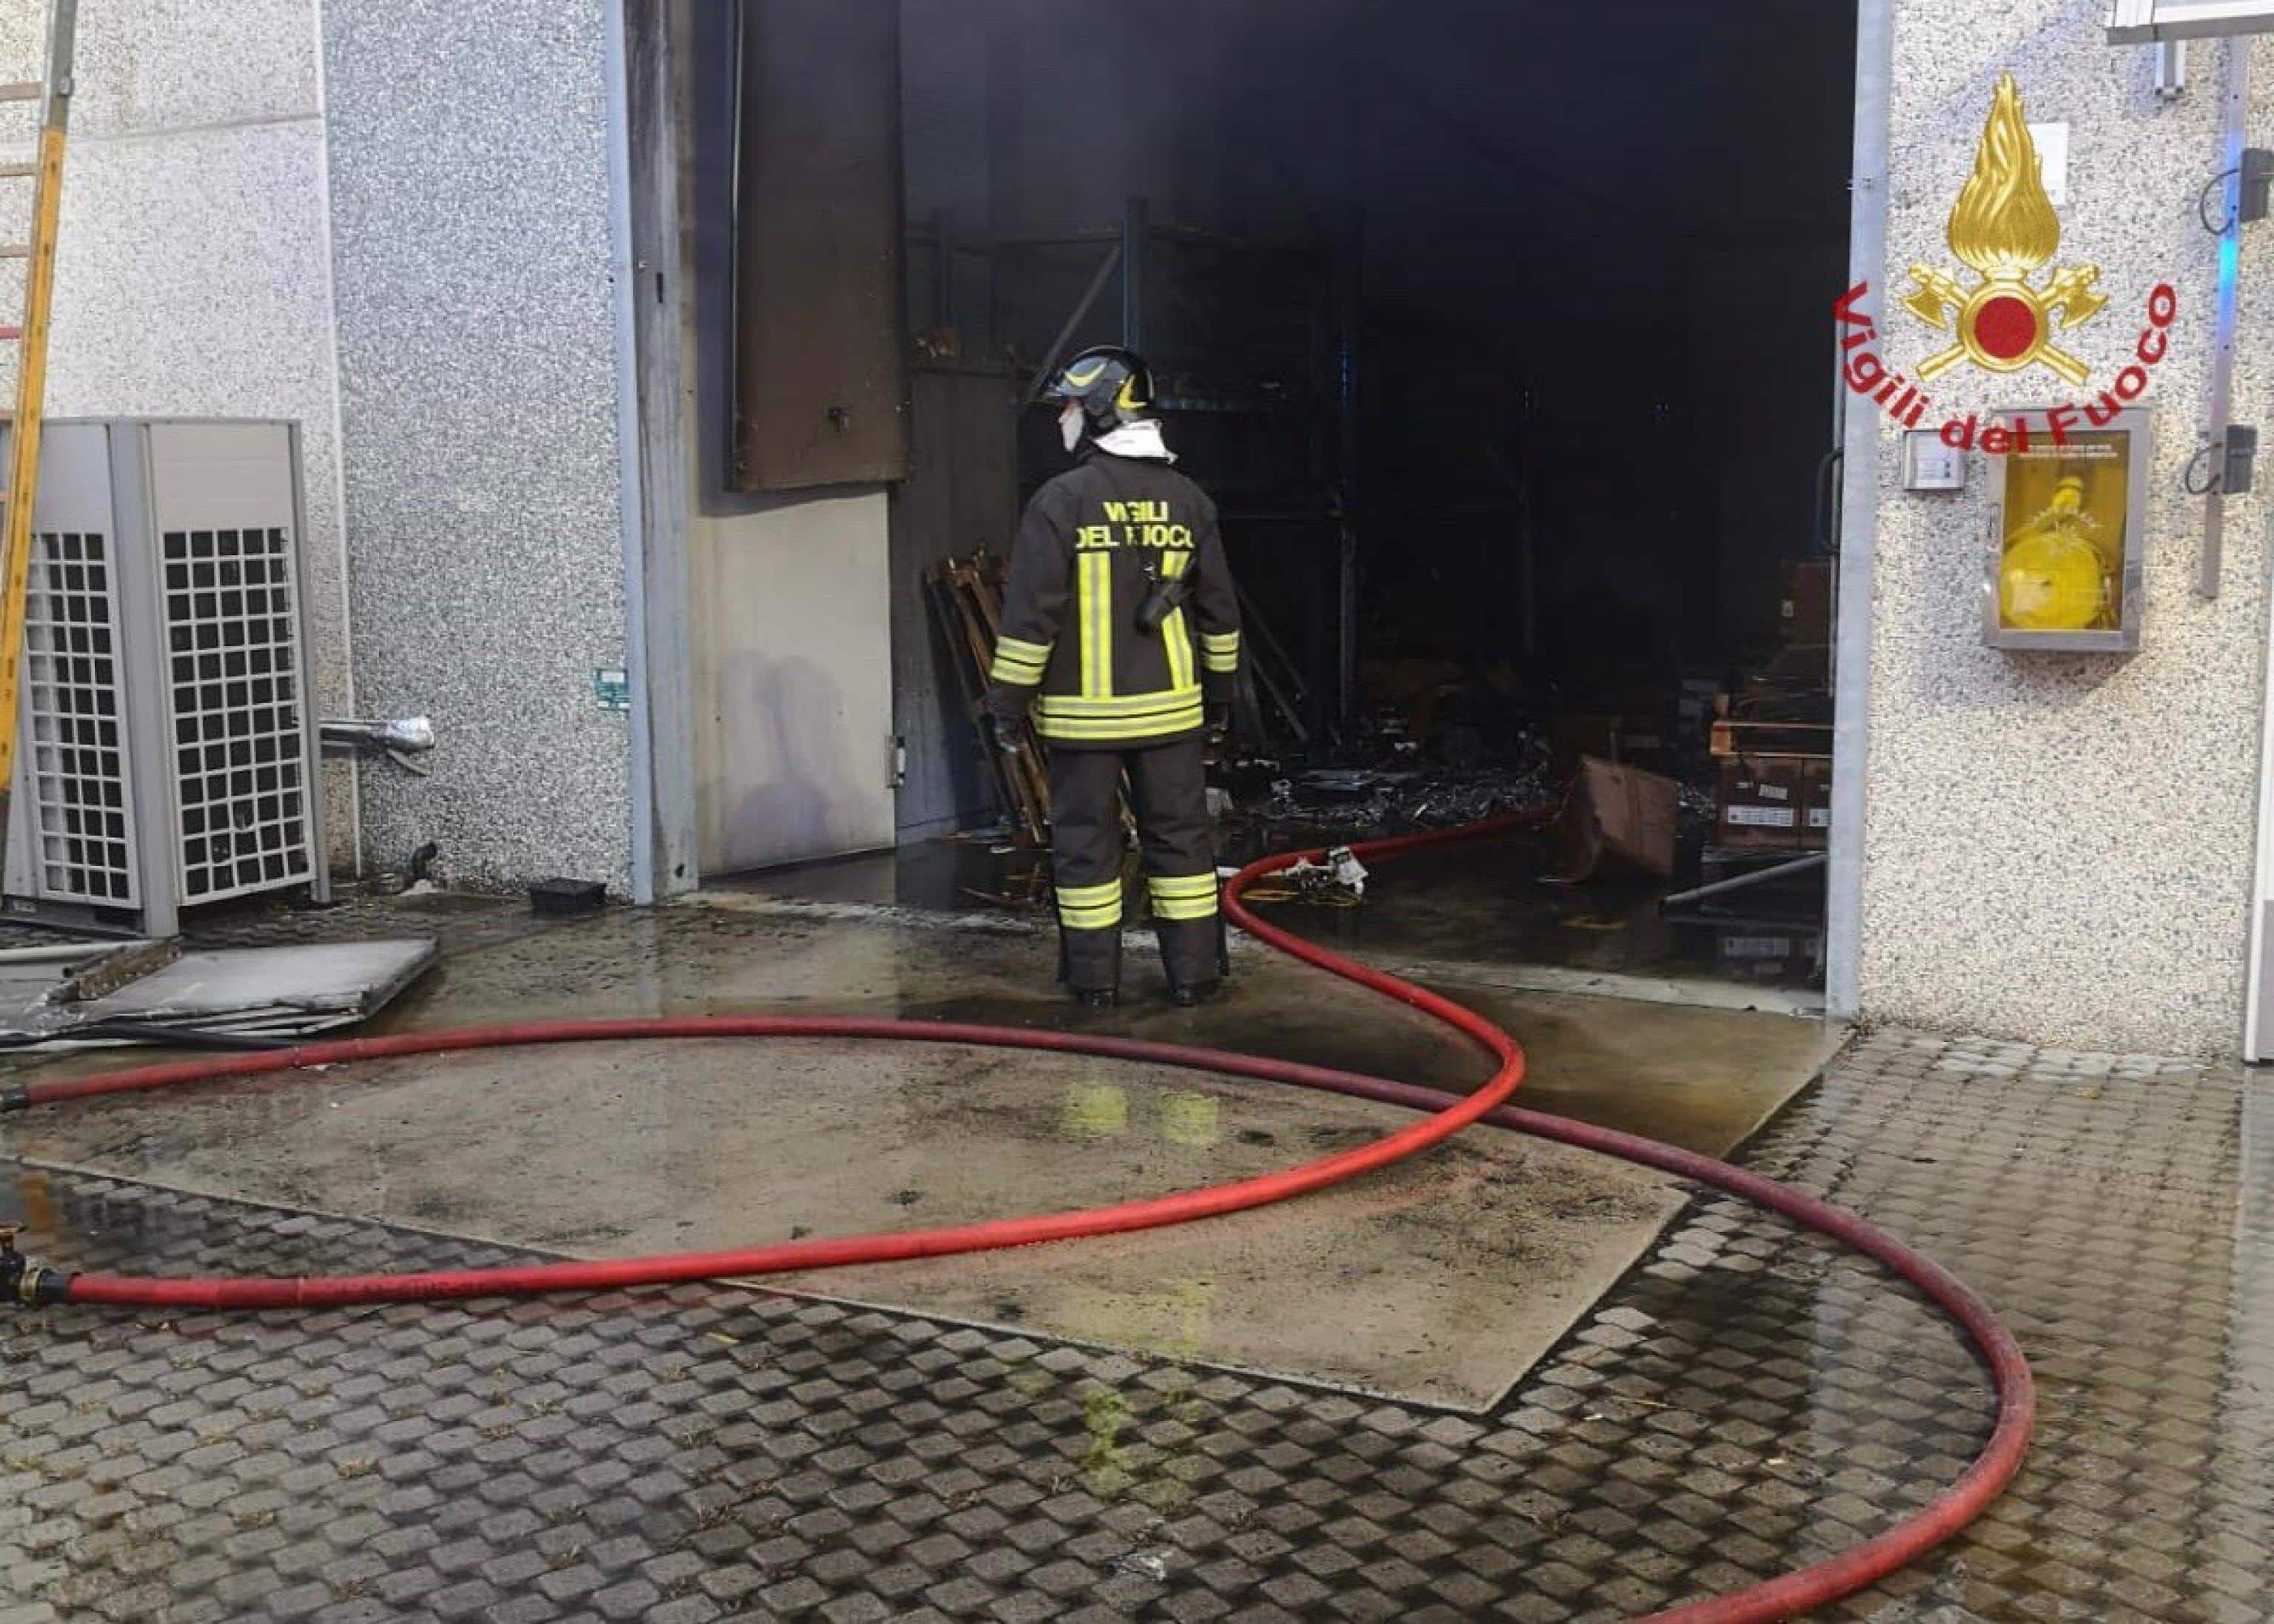 L'incendio nel capannone della ditta CSC Italia azienda di  fornitura di servizi qualificati su terminali P.O.Sa Gessate (Mi) , 7 settembre 2022.
ANSA/VIGILI DEL FUOCO EDITORIAL USE ONLY NO SALES